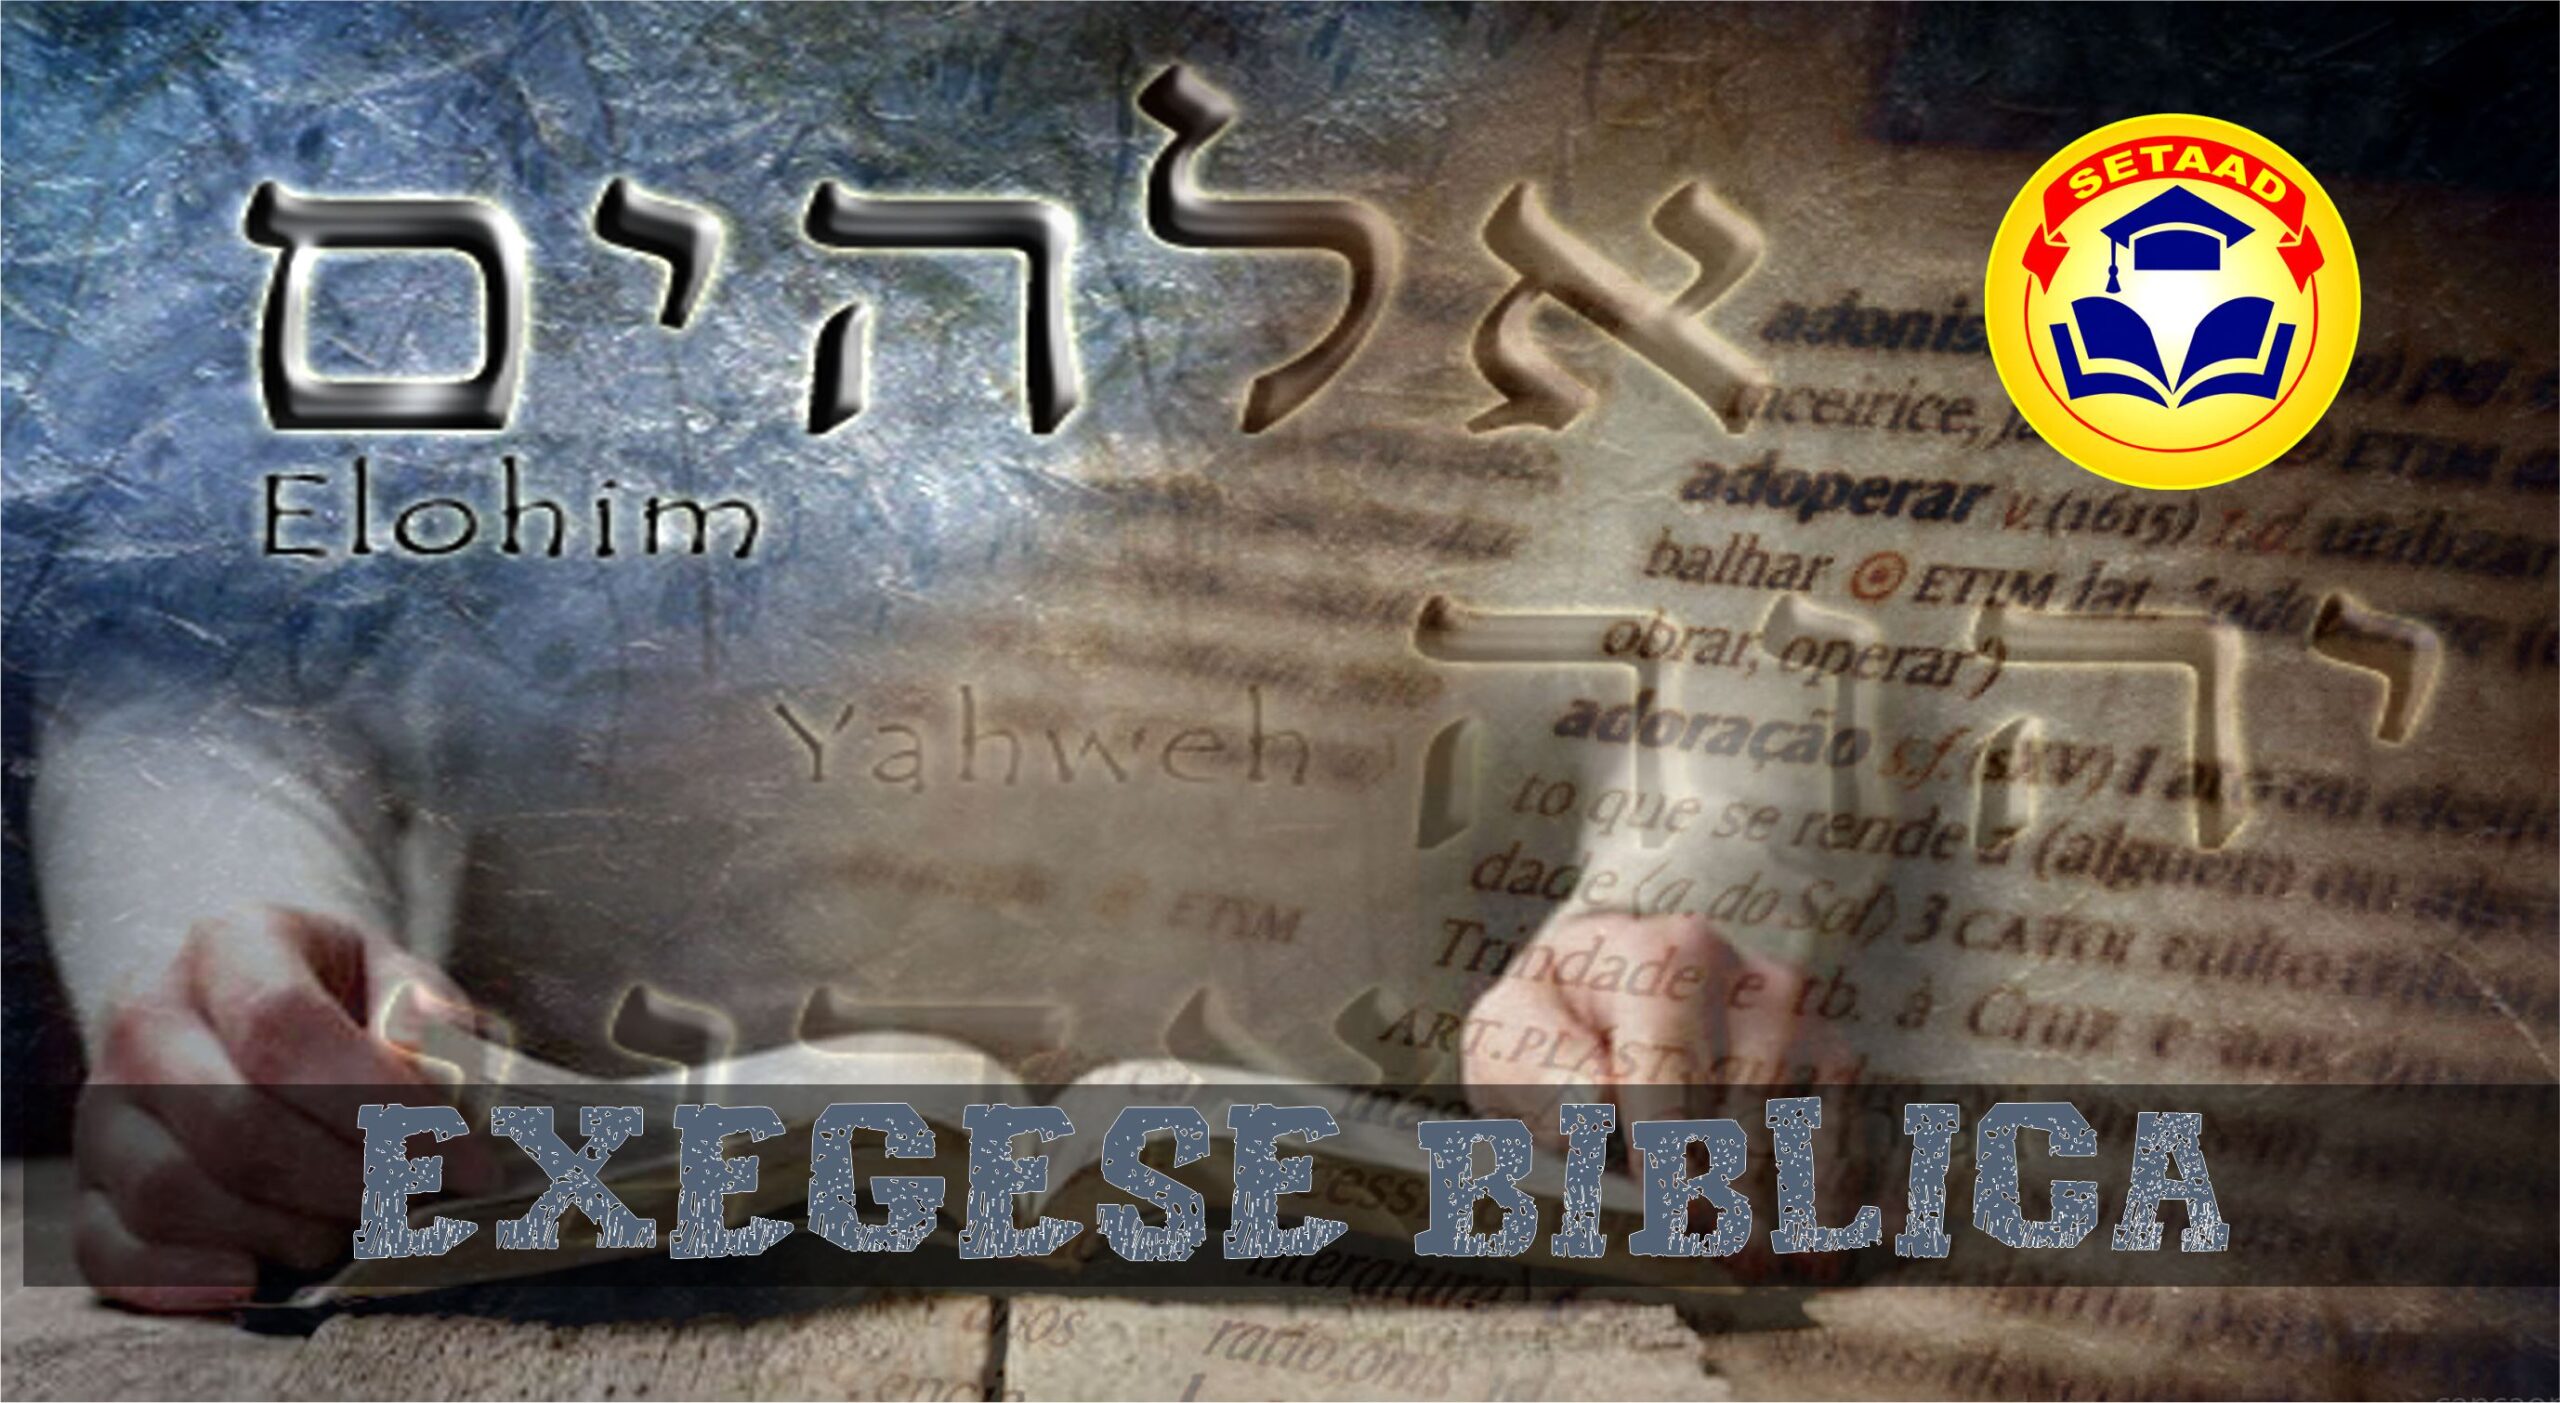 Exegese Bíblica (26 Matéria do Curso Médio em Teologia Setaad)